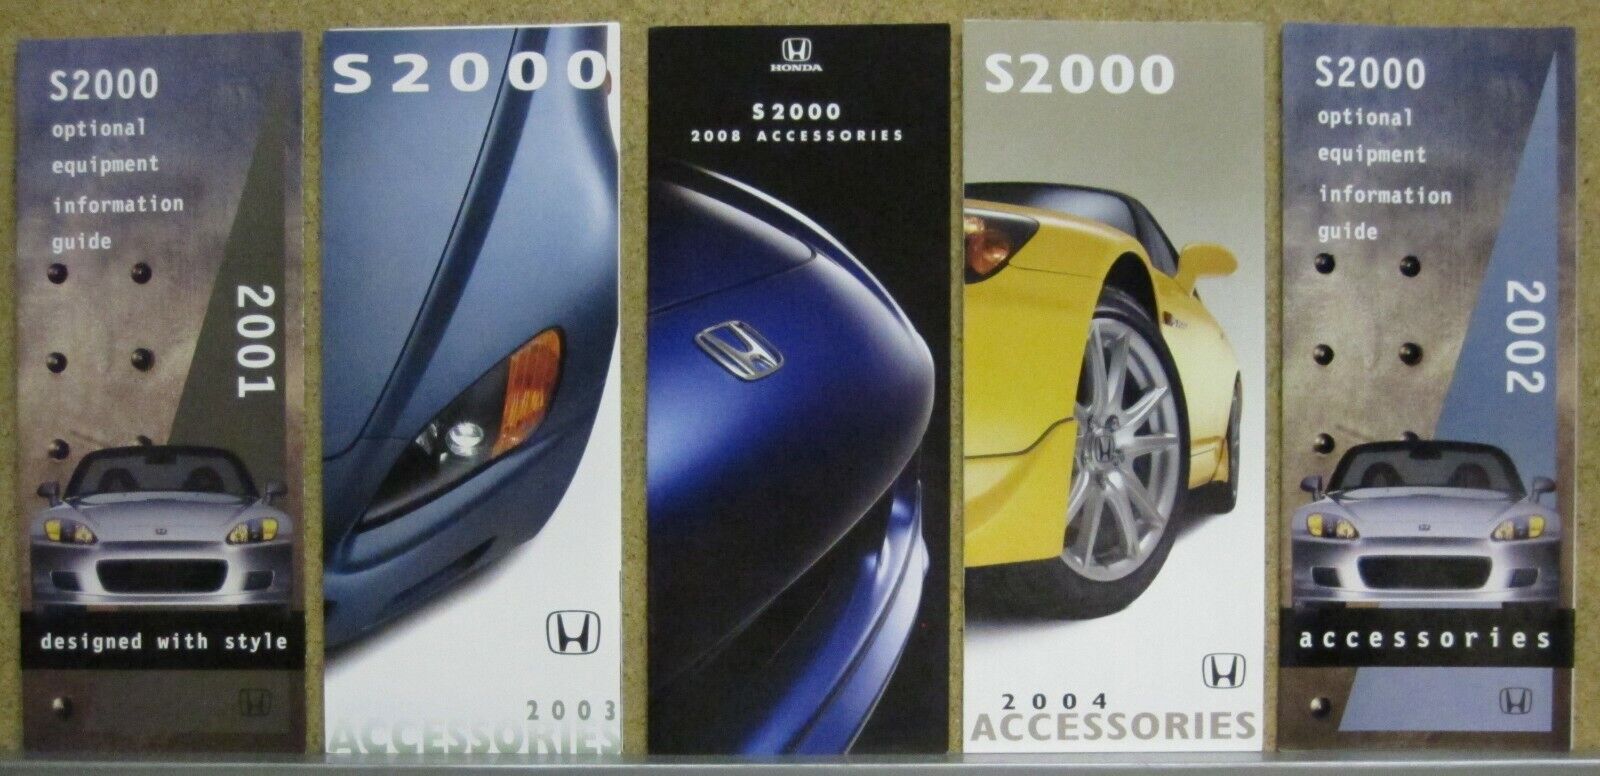 Honda S2000 Accessories Brochure Lot (5) 2001 2002 2003 2004 2009